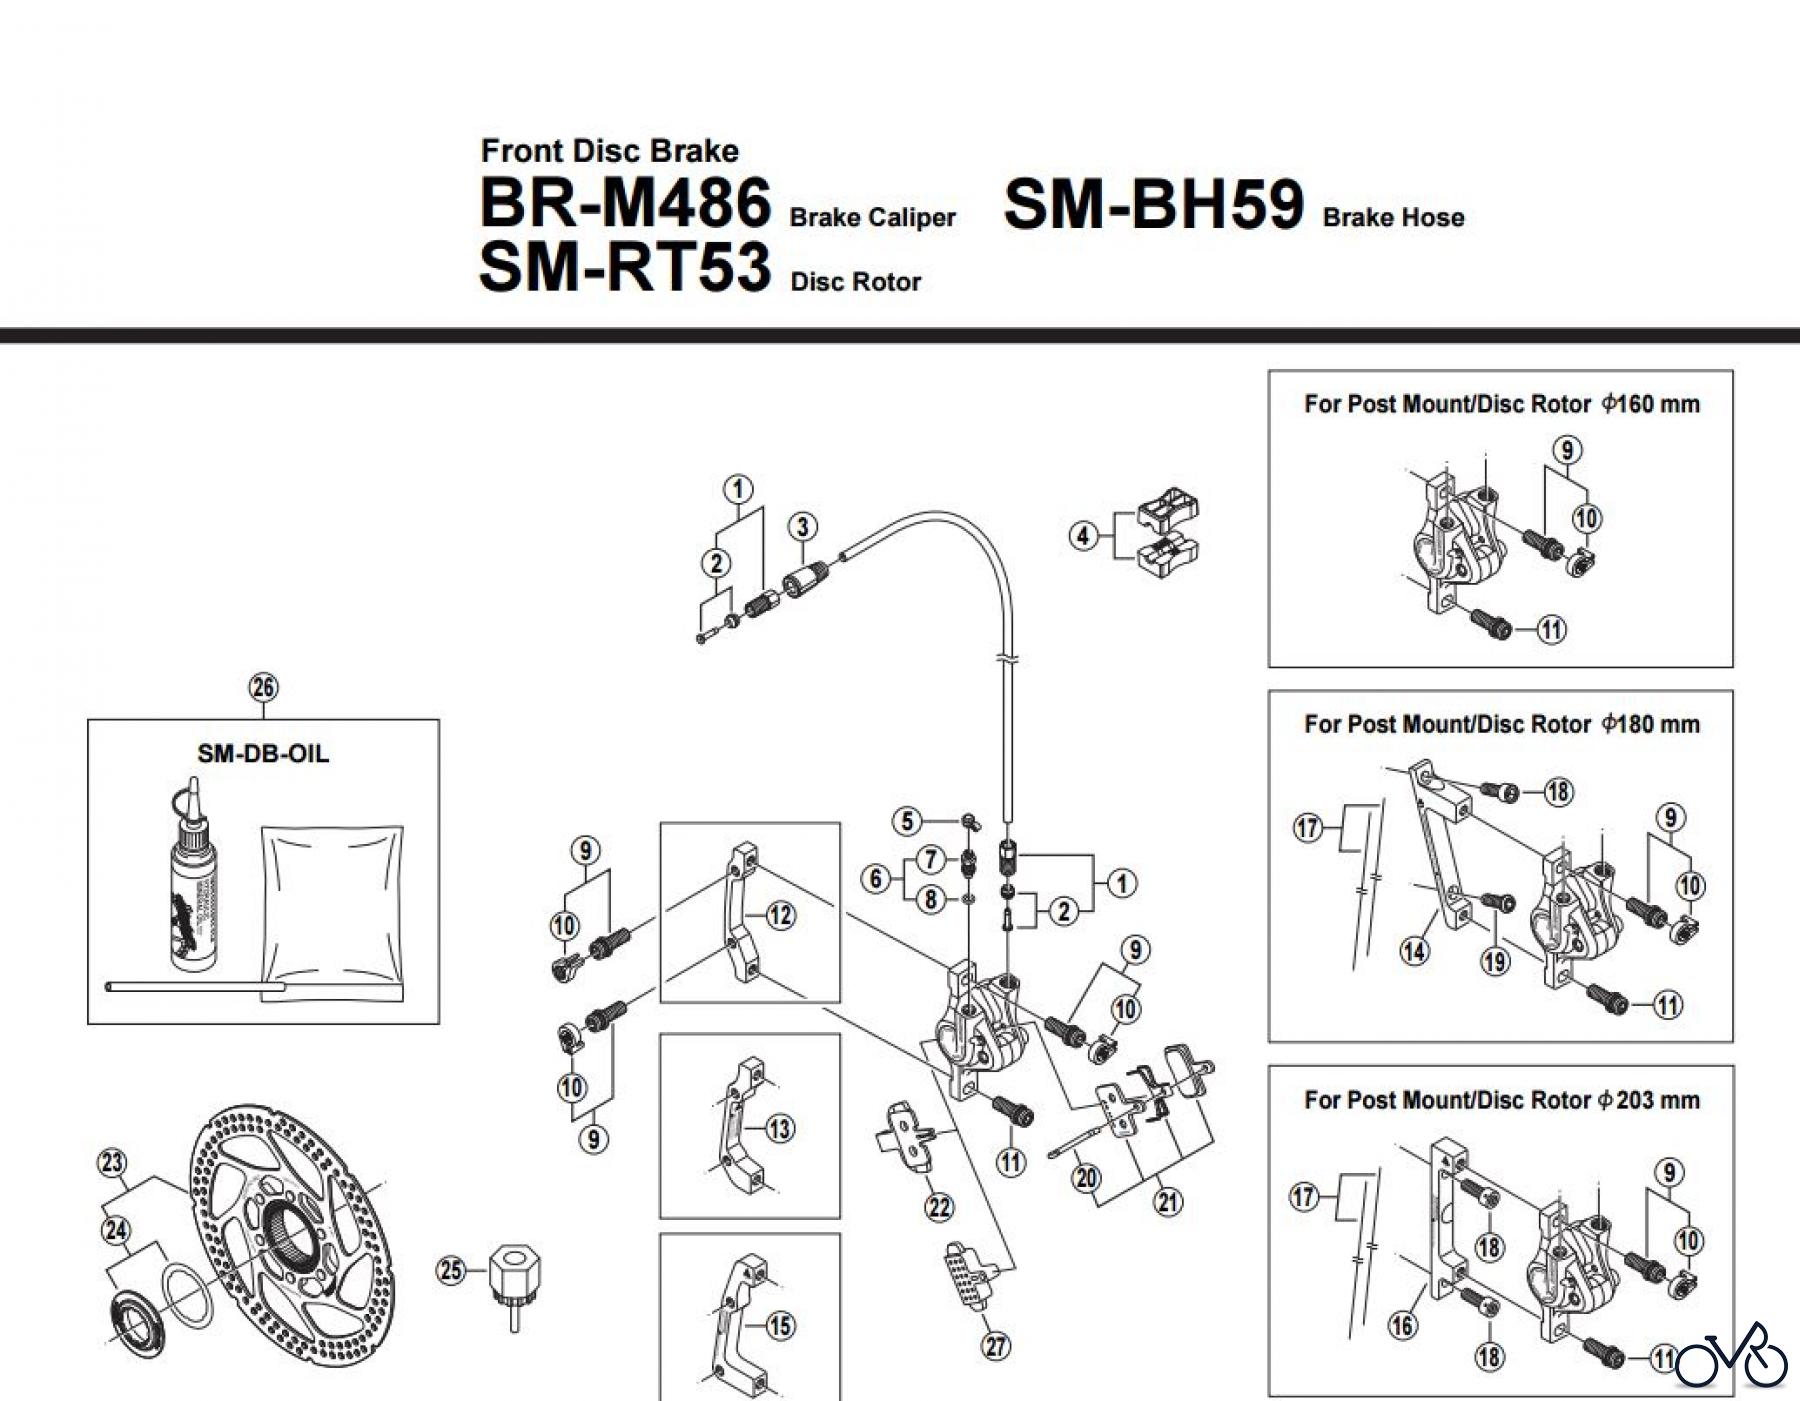  Shimano BR Brake - Bremse BR-M486-F-2883A Front Disc Brake